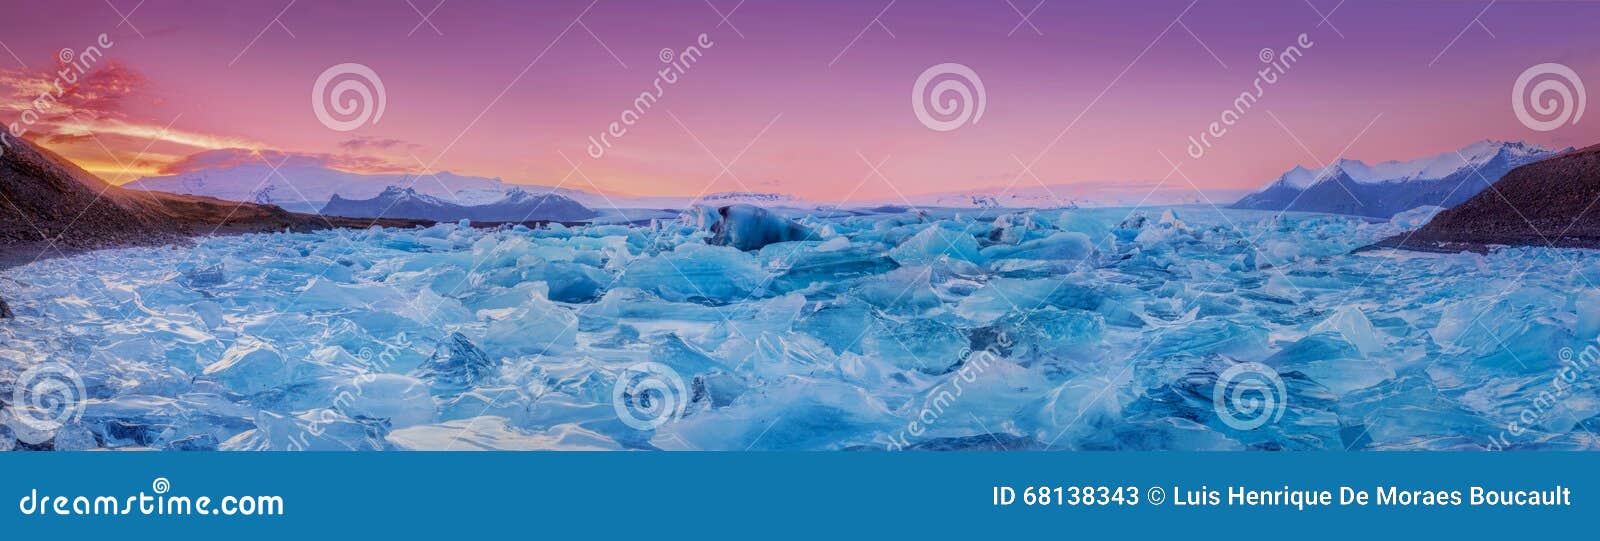 field of ice & sunset